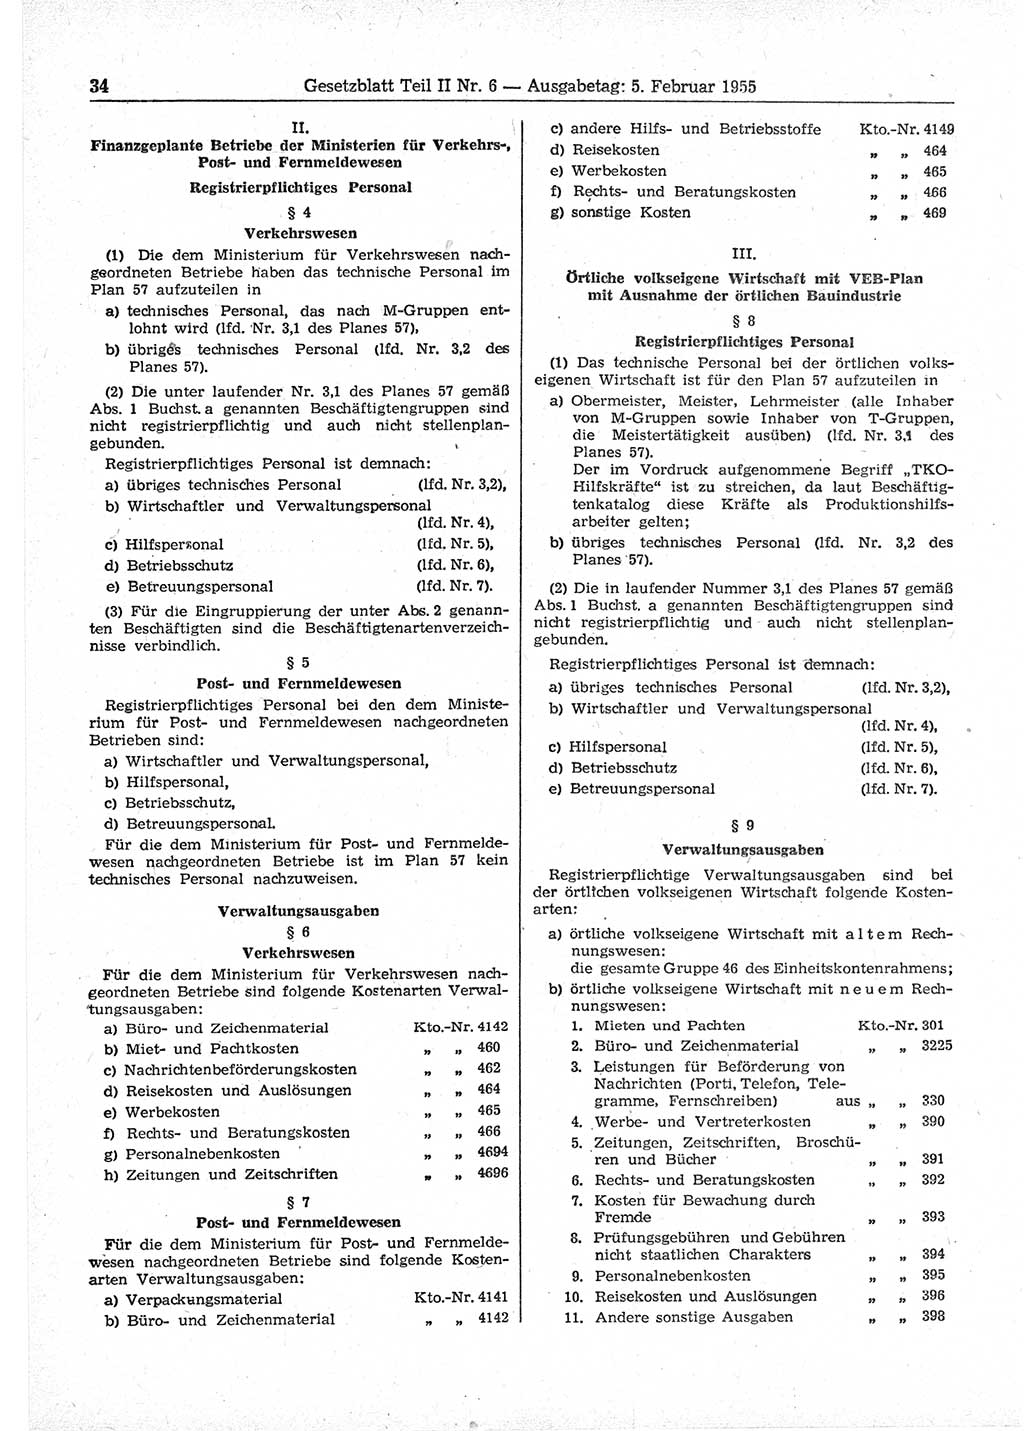 Gesetzblatt (GBl.) der Deutschen Demokratischen Republik (DDR) Teil ⅠⅠ 1955, Seite 34 (GBl. DDR ⅠⅠ 1955, S. 34)